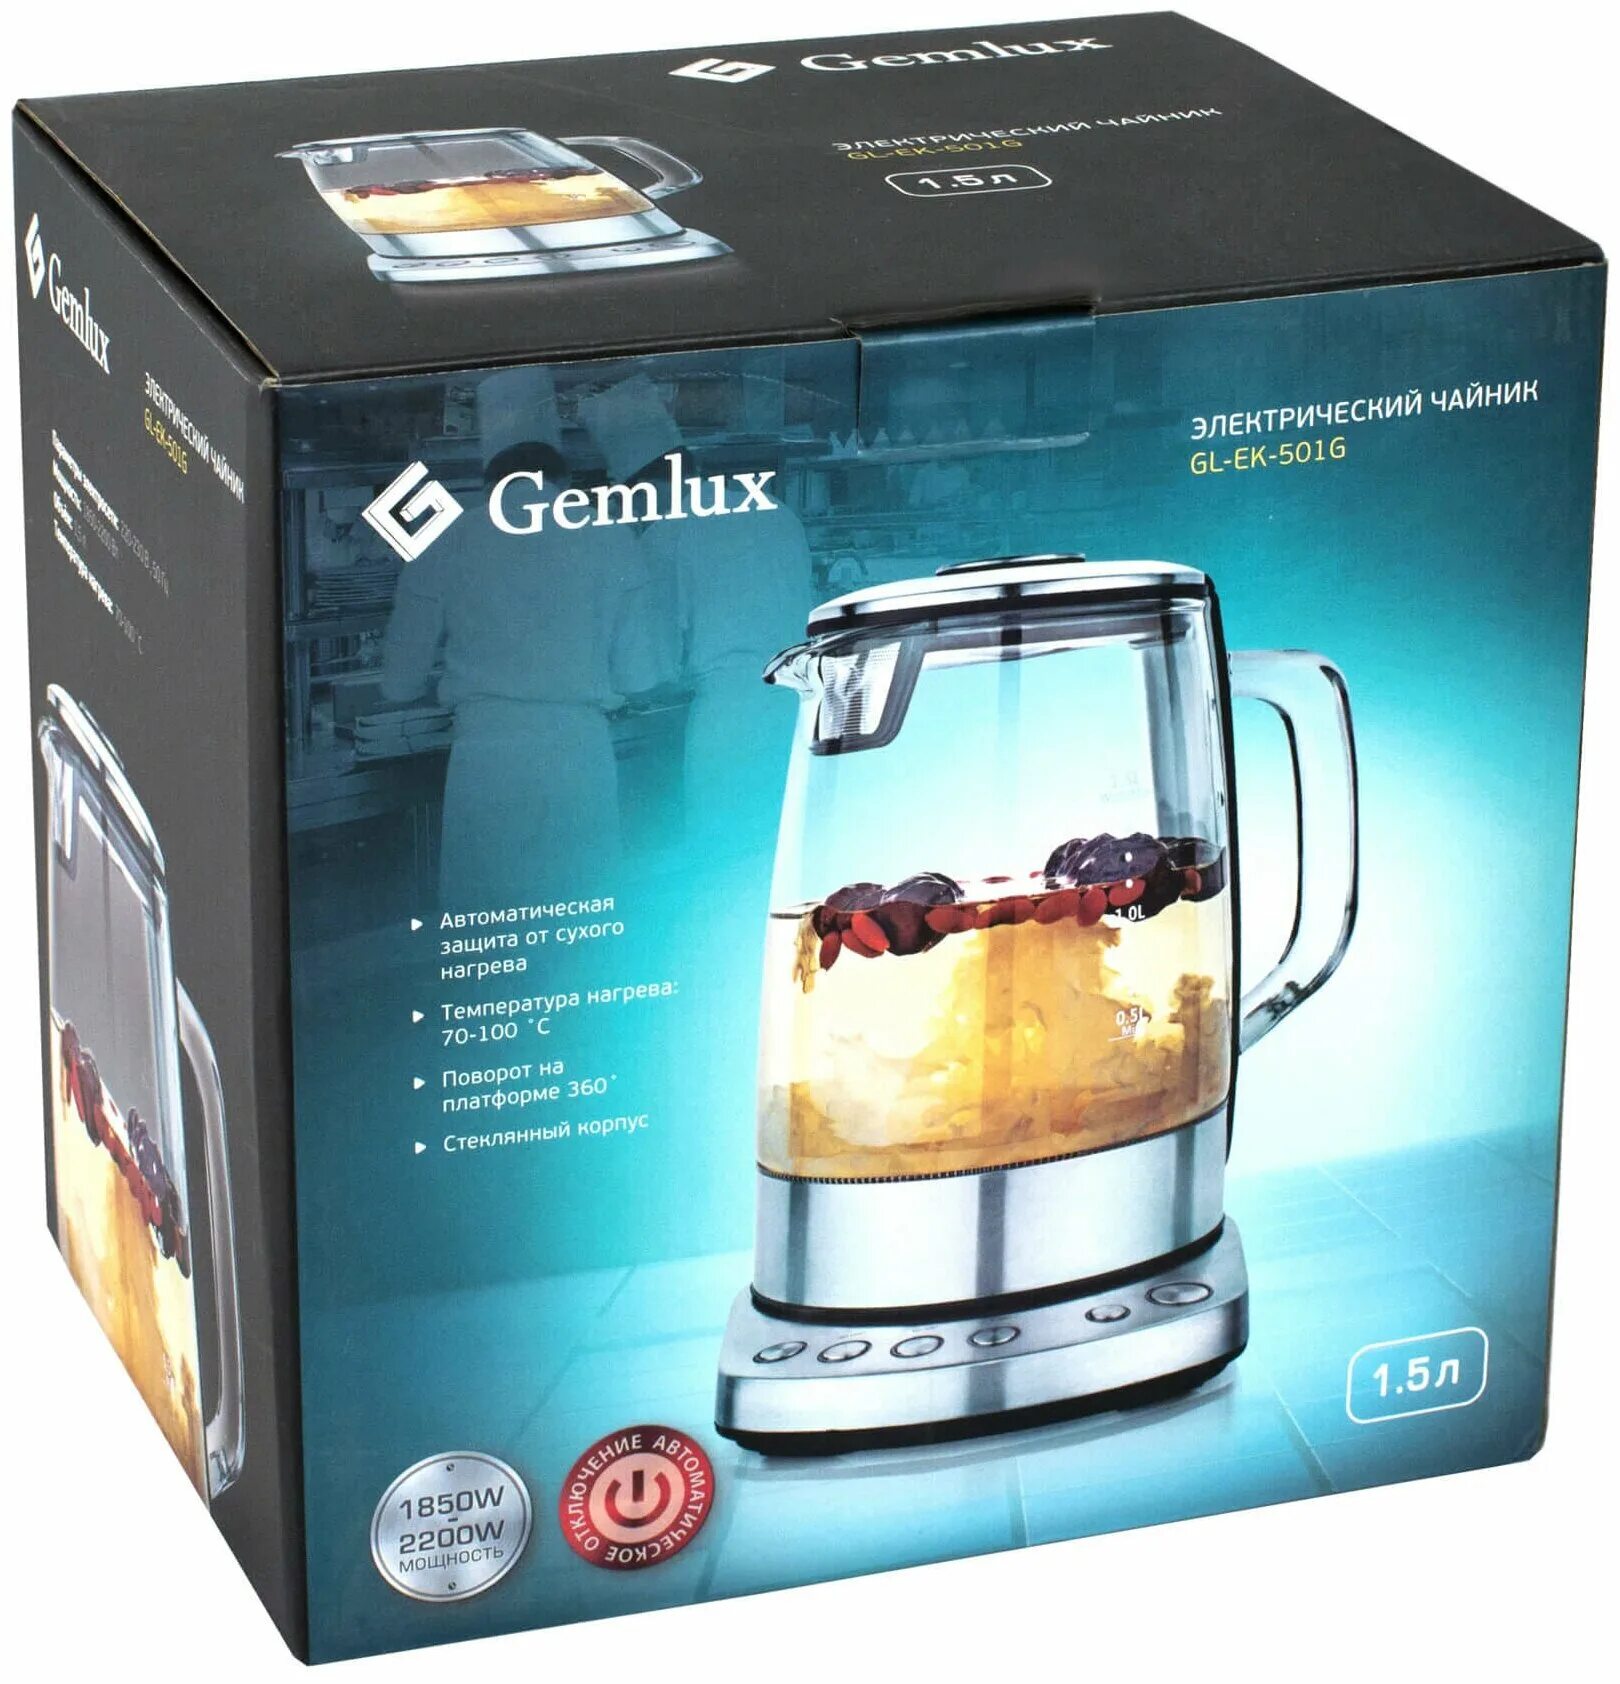 Термопот gemlux. Чайник Gemlux. Чайник Gemlux стеклянный электрический. Чайник 5016. Gemlux gl-Ek-895gc.